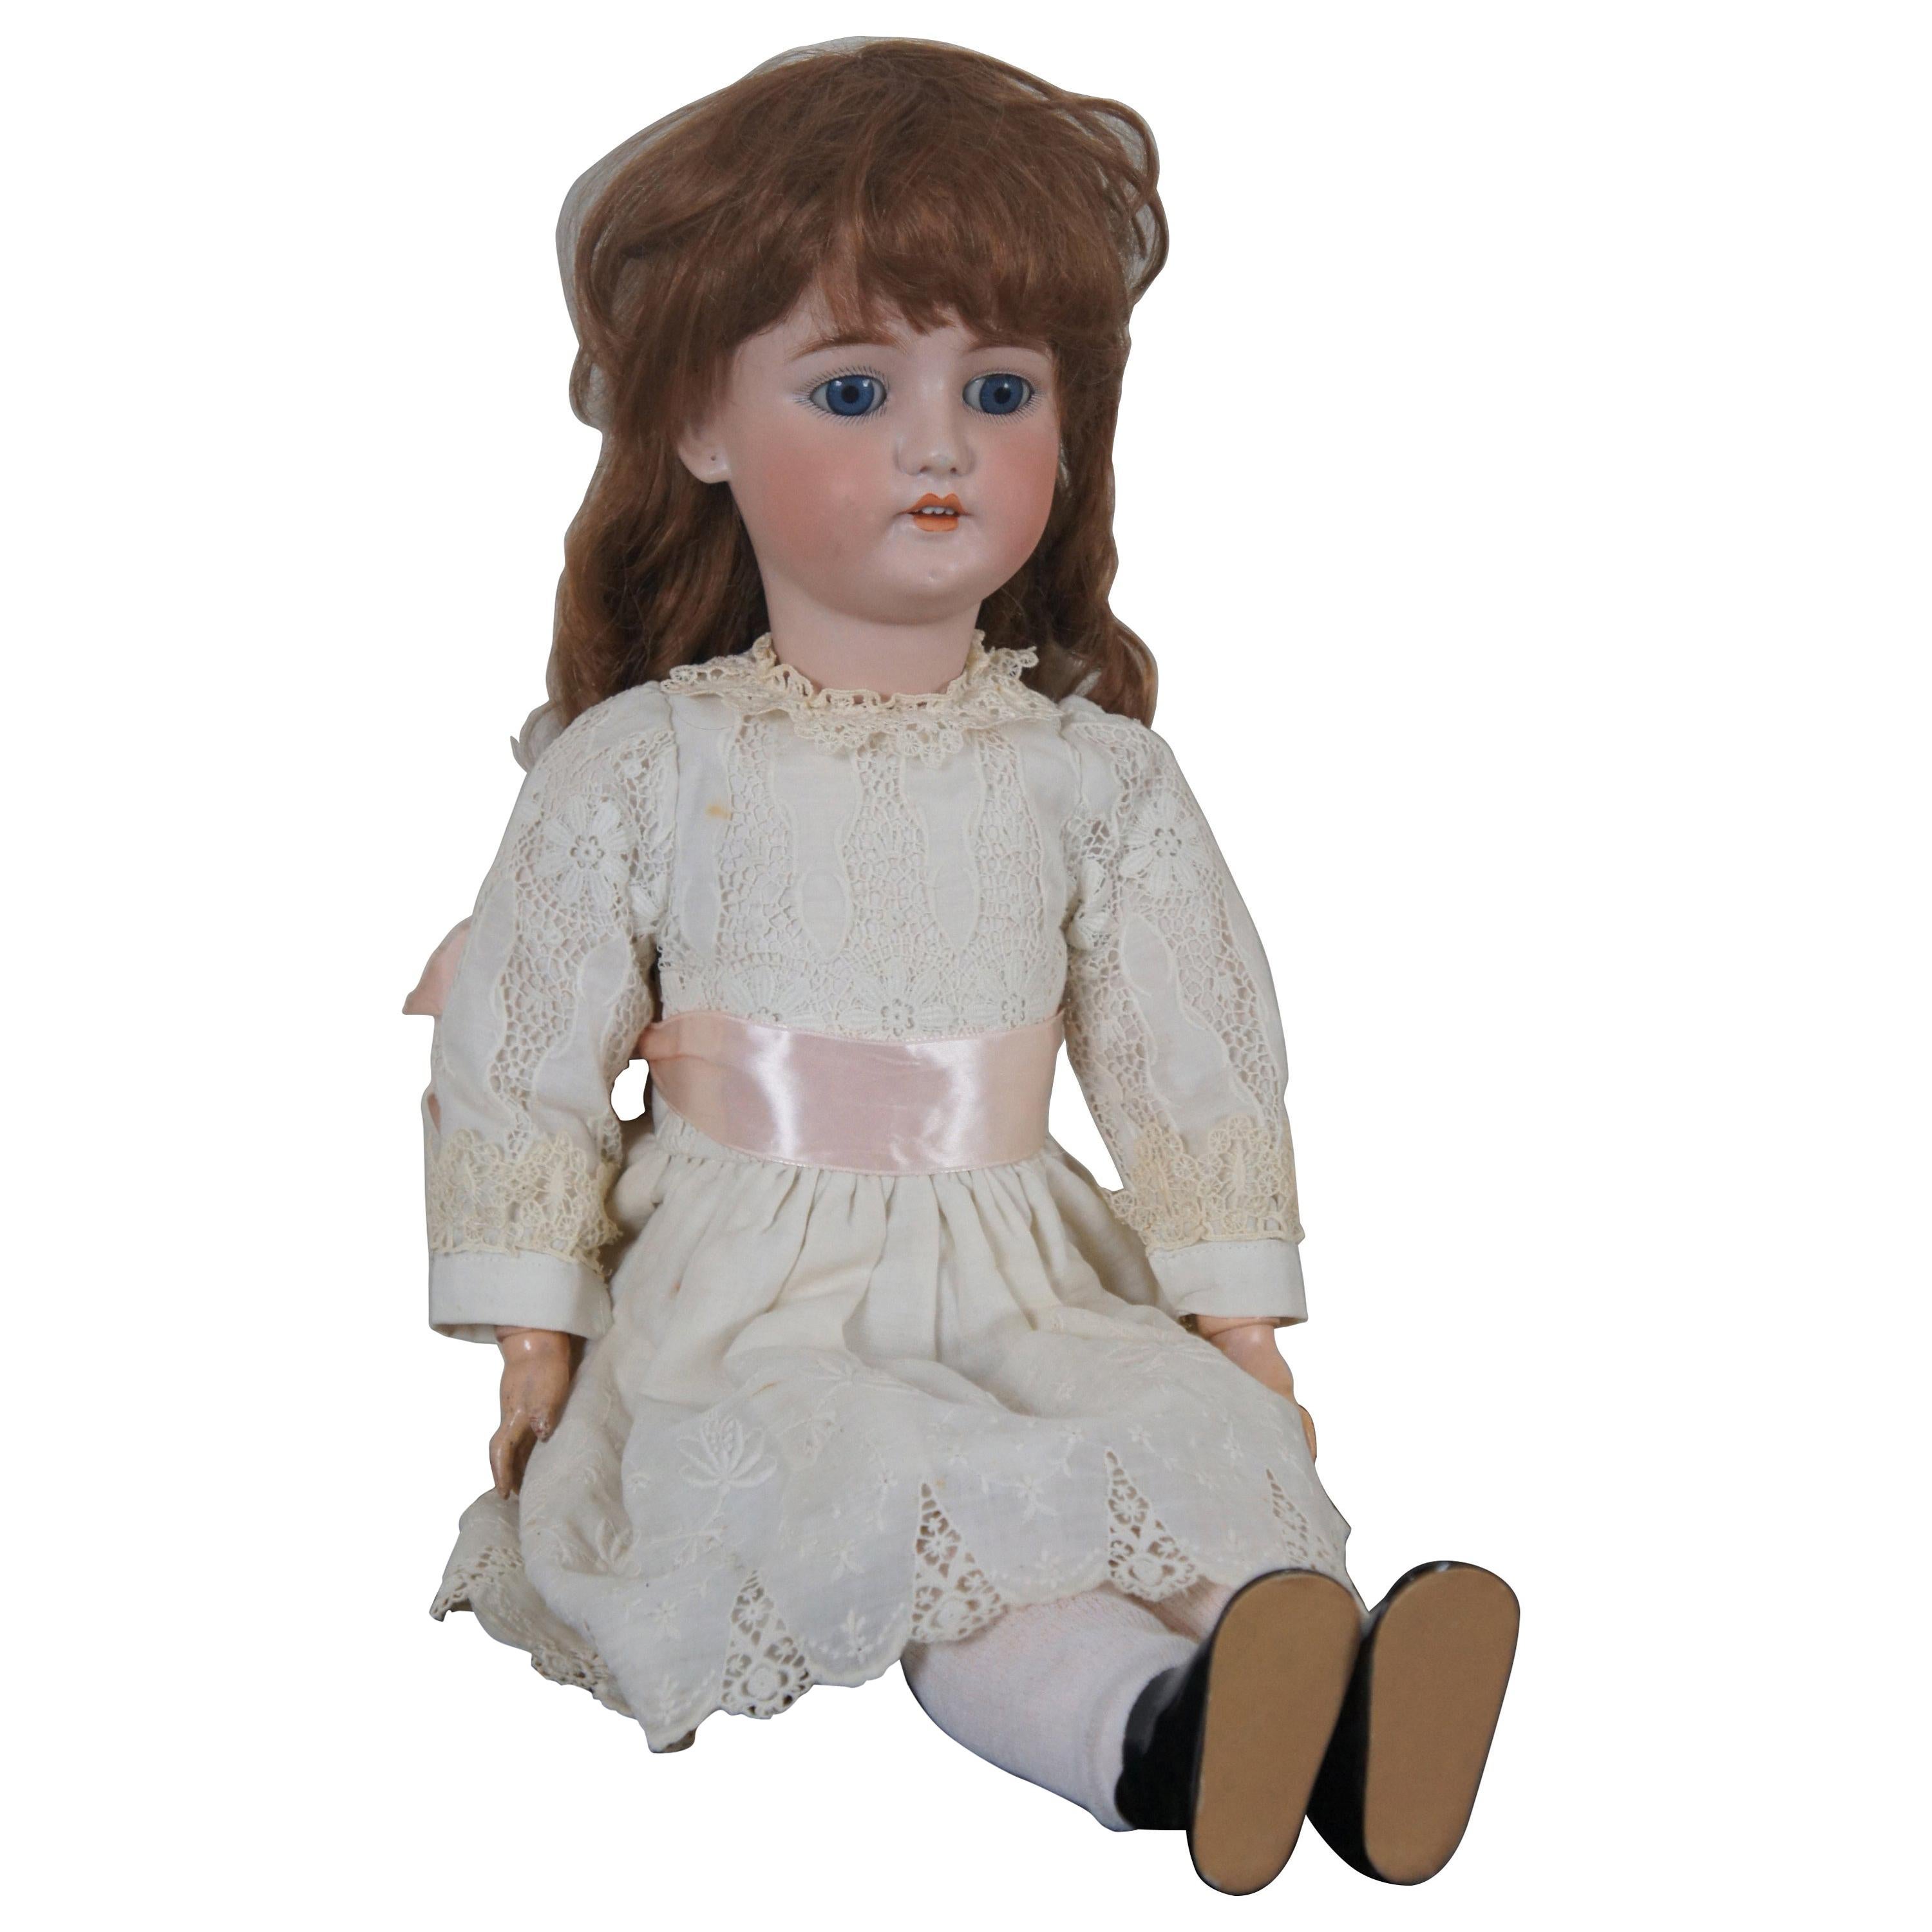 Antique 19th Century CM Bergmann Simon & Halbig Bisque Composite Girl Doll